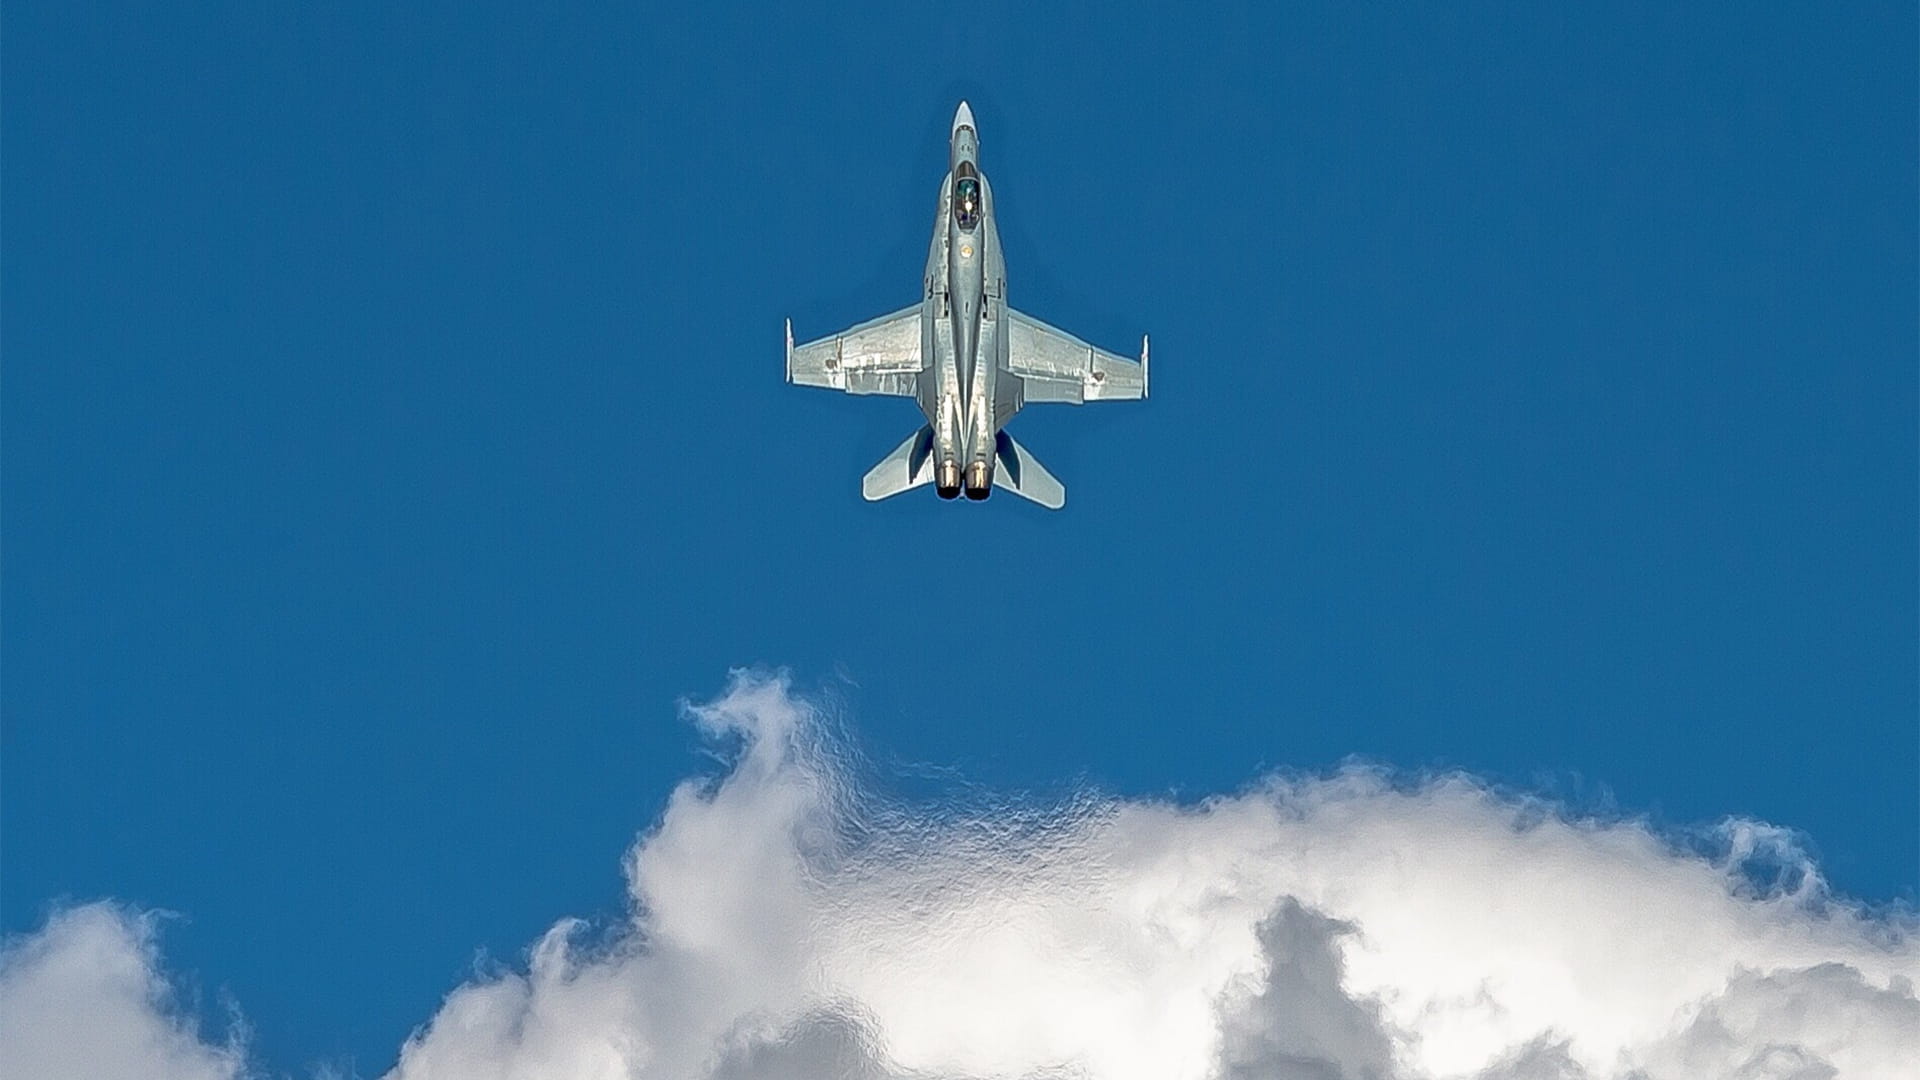 F-18 fighter jet soaring in flight